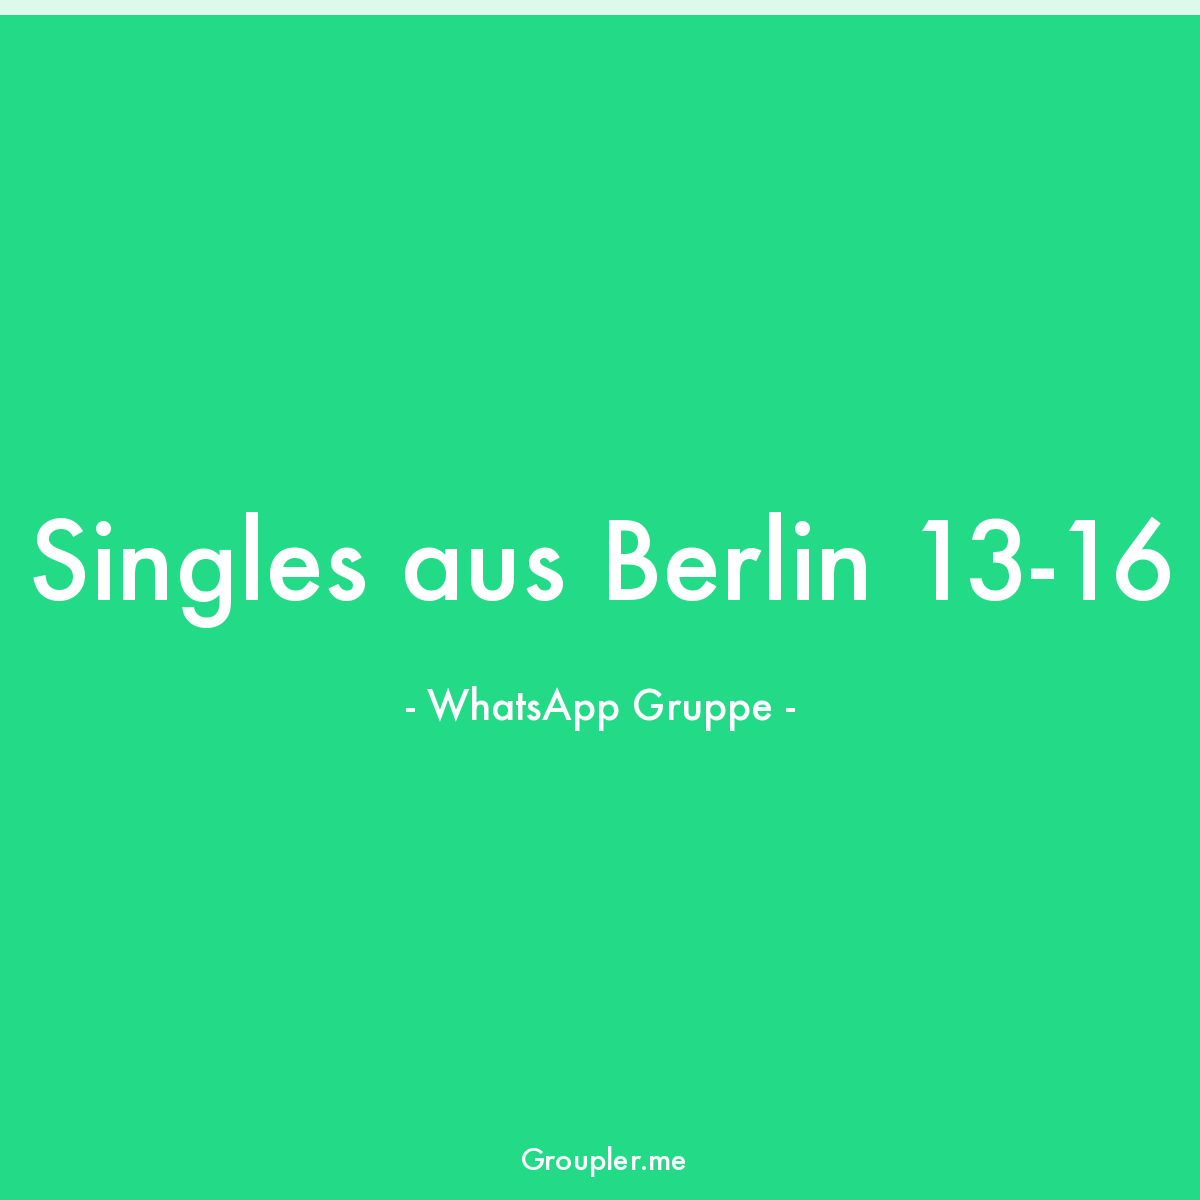 whatsapp gruppe berlin single